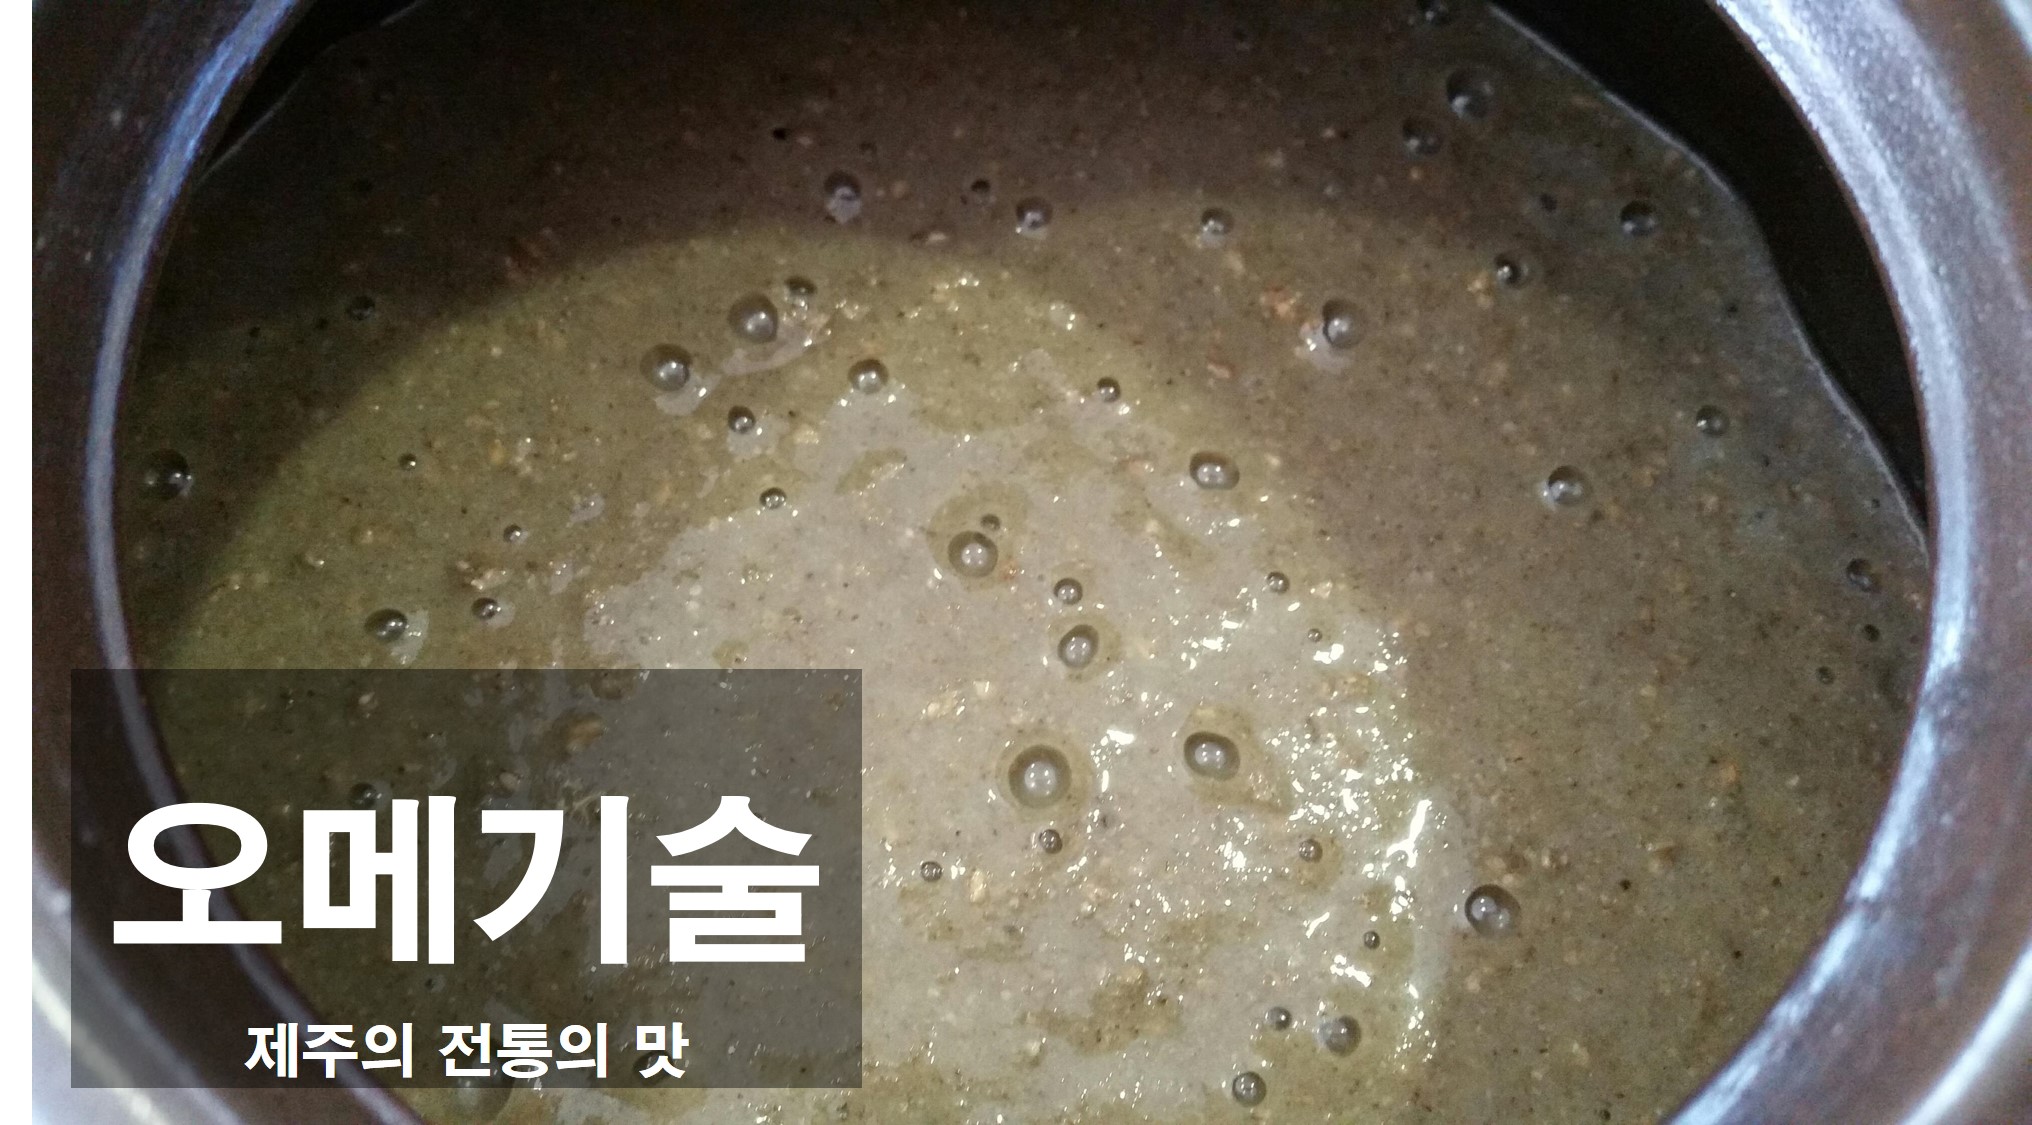 전통식문화 계승활동지원 『발효음식 과정』교육 (4회차)